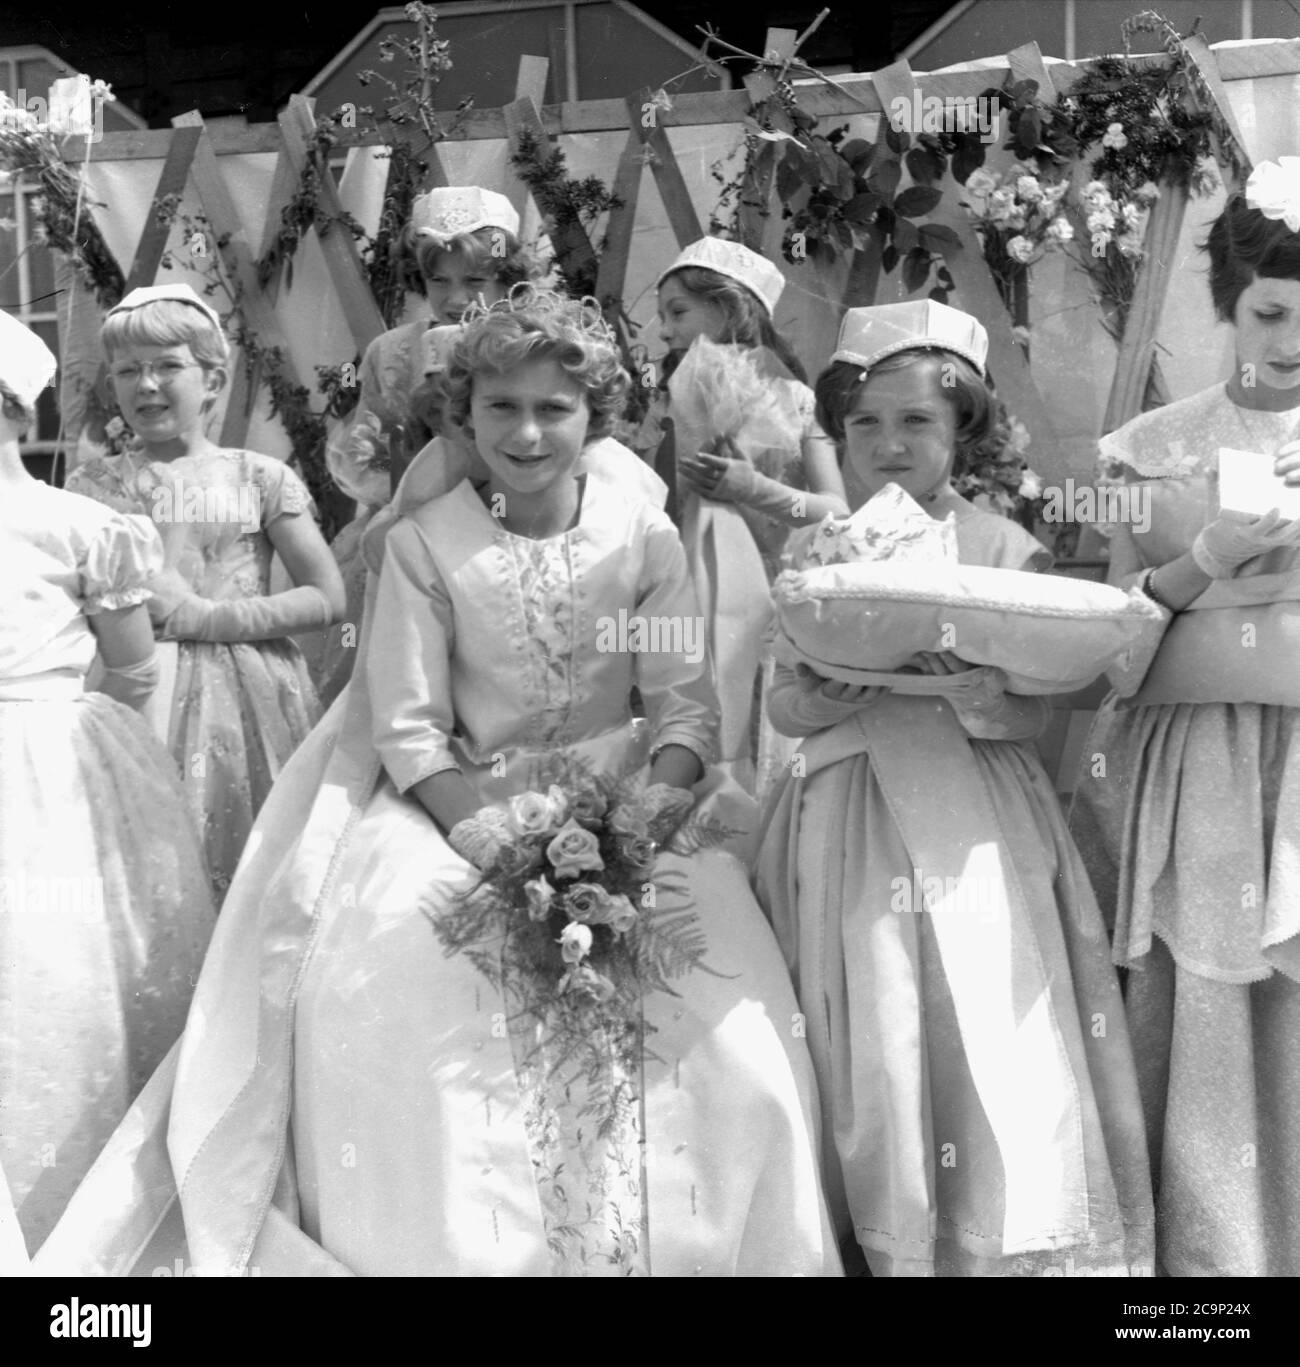 Les années 1950, historiques, sur une plate-forme à l'extérieur d'un pavillon sportif en bois à Farnworth, dans le Lancashire, les jeunes filles vêtues de robes se réunissent pour la cérémonie de la Reine des roses. La « Rose Reine » serait à la tête de la traditionnelle procession ou parade connue sous le nom de « Journée de marche », des célébrations qui étaient communes dans le nord-ouest de l'Angleterre, au Royaume-Uni dans cette époque. Un événement annuel, certains remontent aux années 1830 où ils étaient des défilés d'église liés aux écoles du dimanche des enfants et beaucoup sont encore aujourd'hui. Banque D'Images